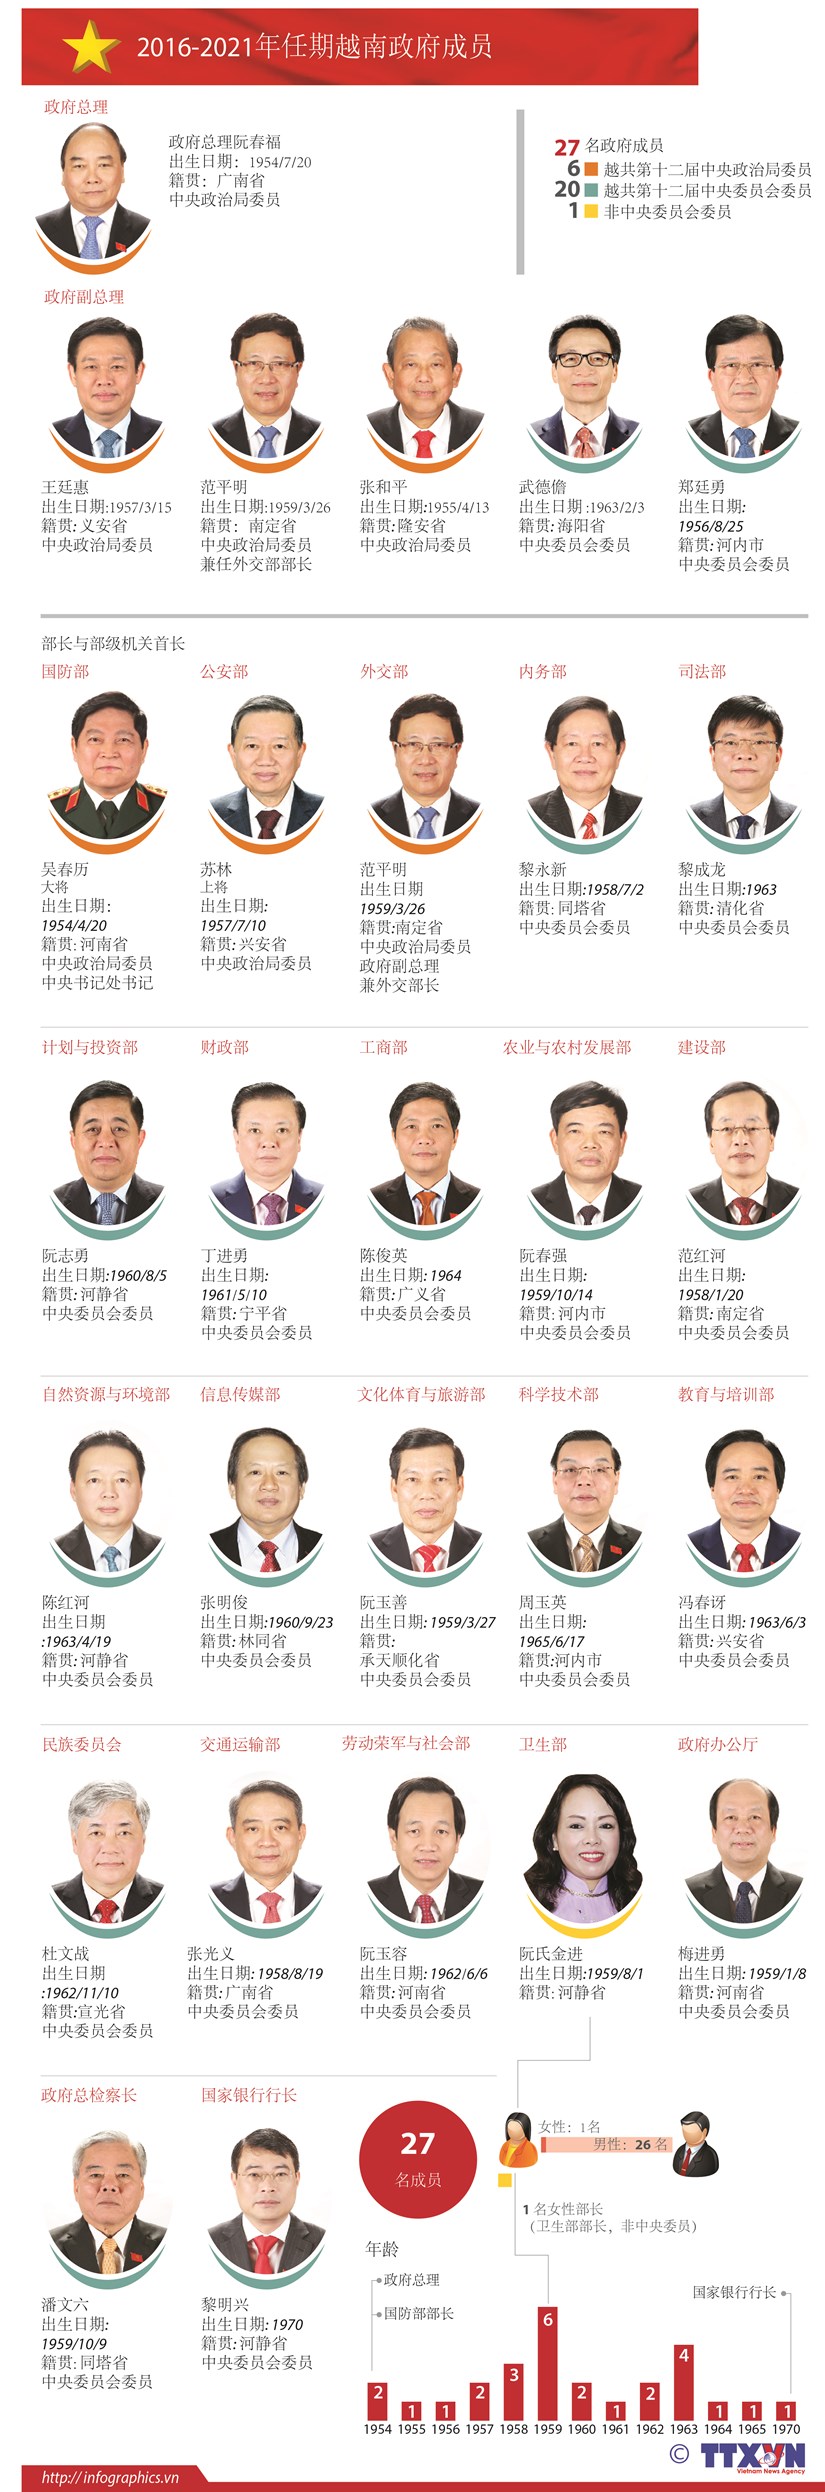 2016-2021年任期越南政府成员 hinh anh 1